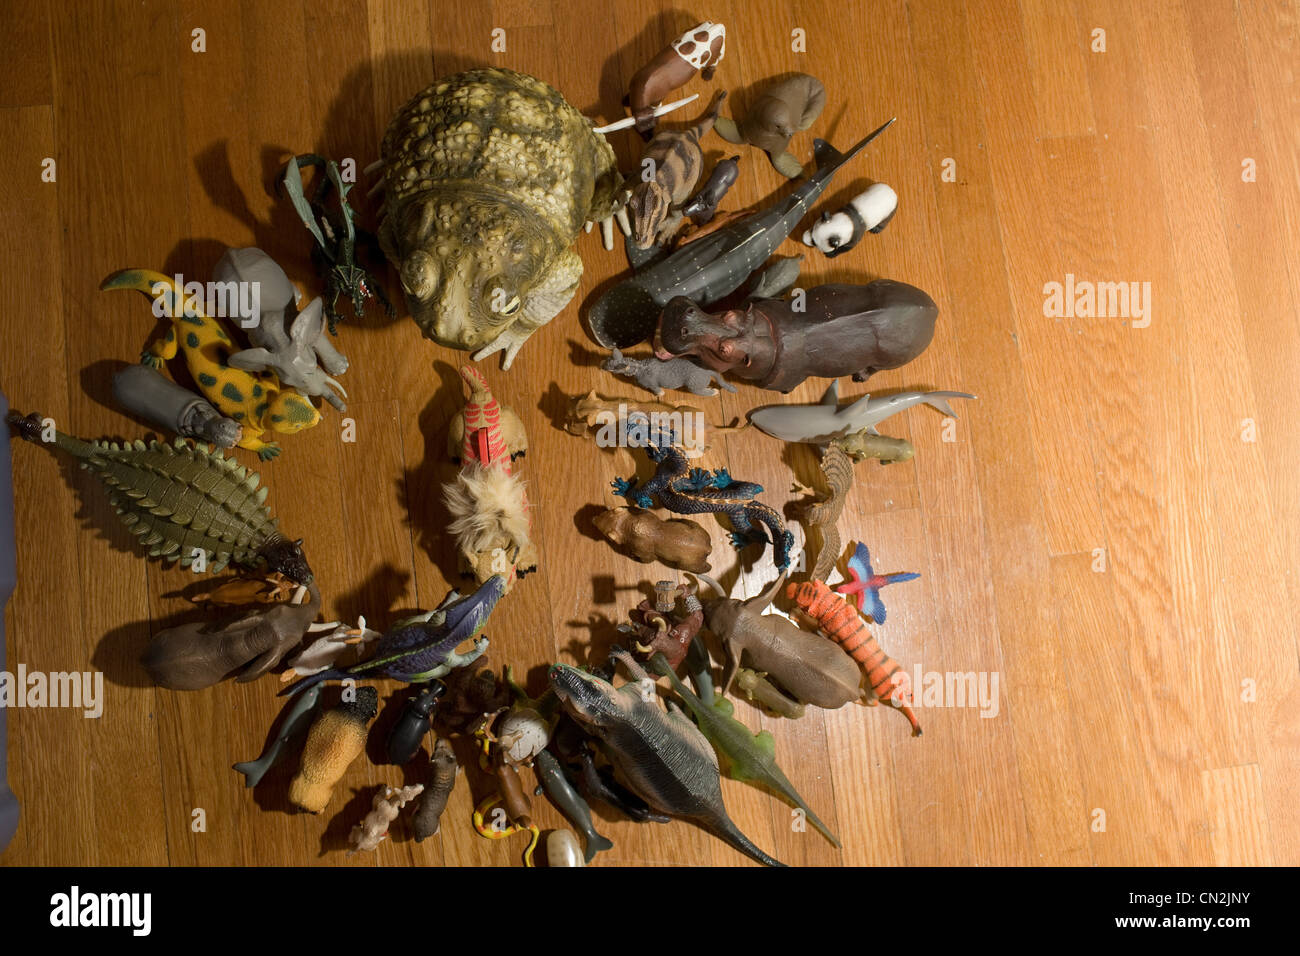 Los animales de juguete en el piso Foto de stock